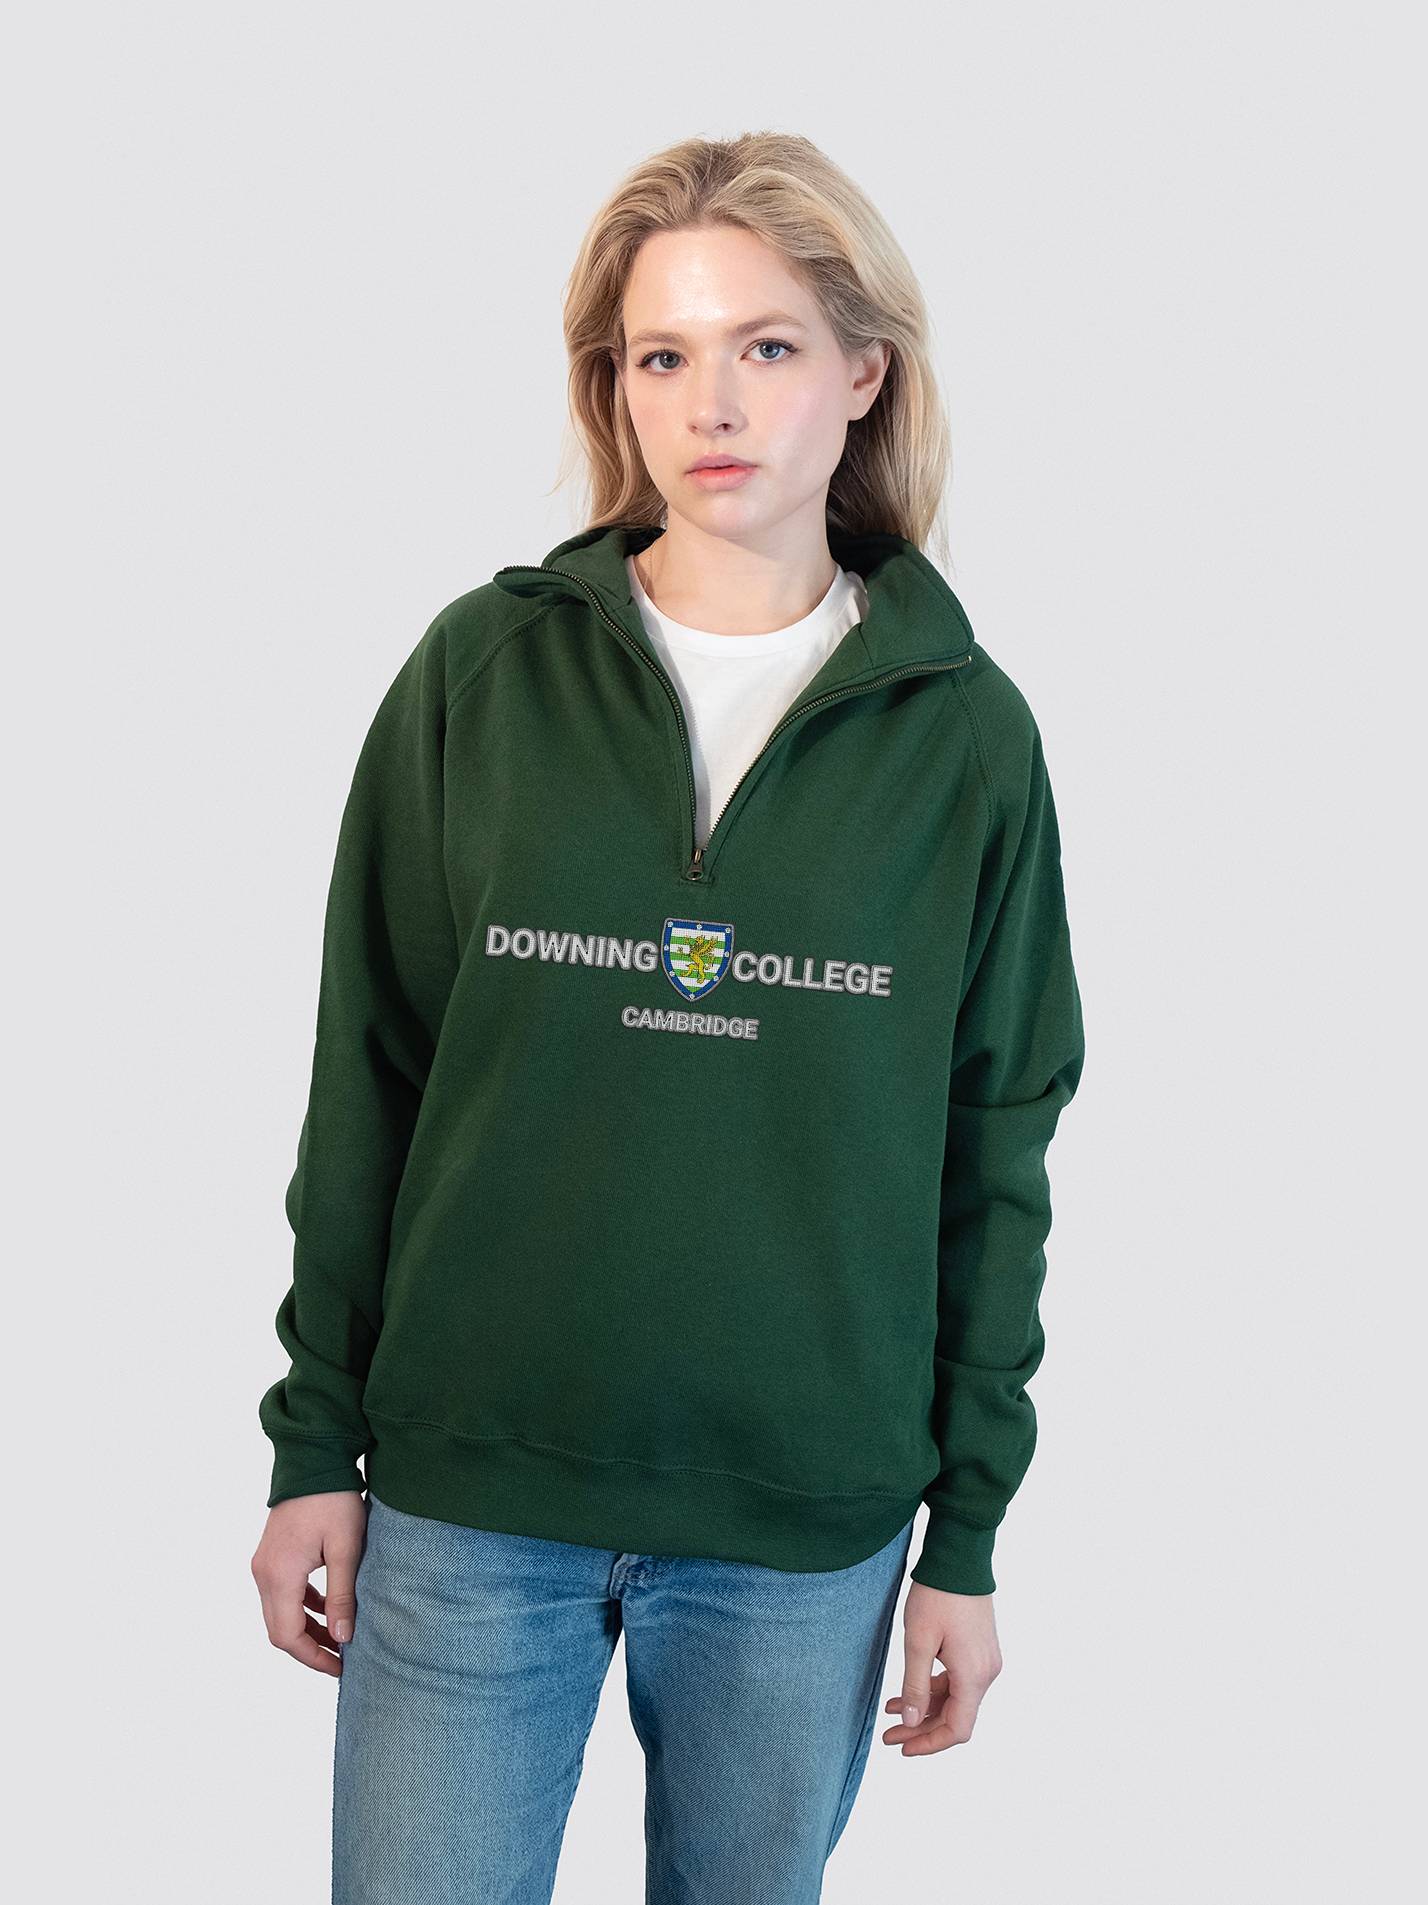 Downing College Cambridge JCR Heritage Unisex 1/4 Zip Sweatshirt